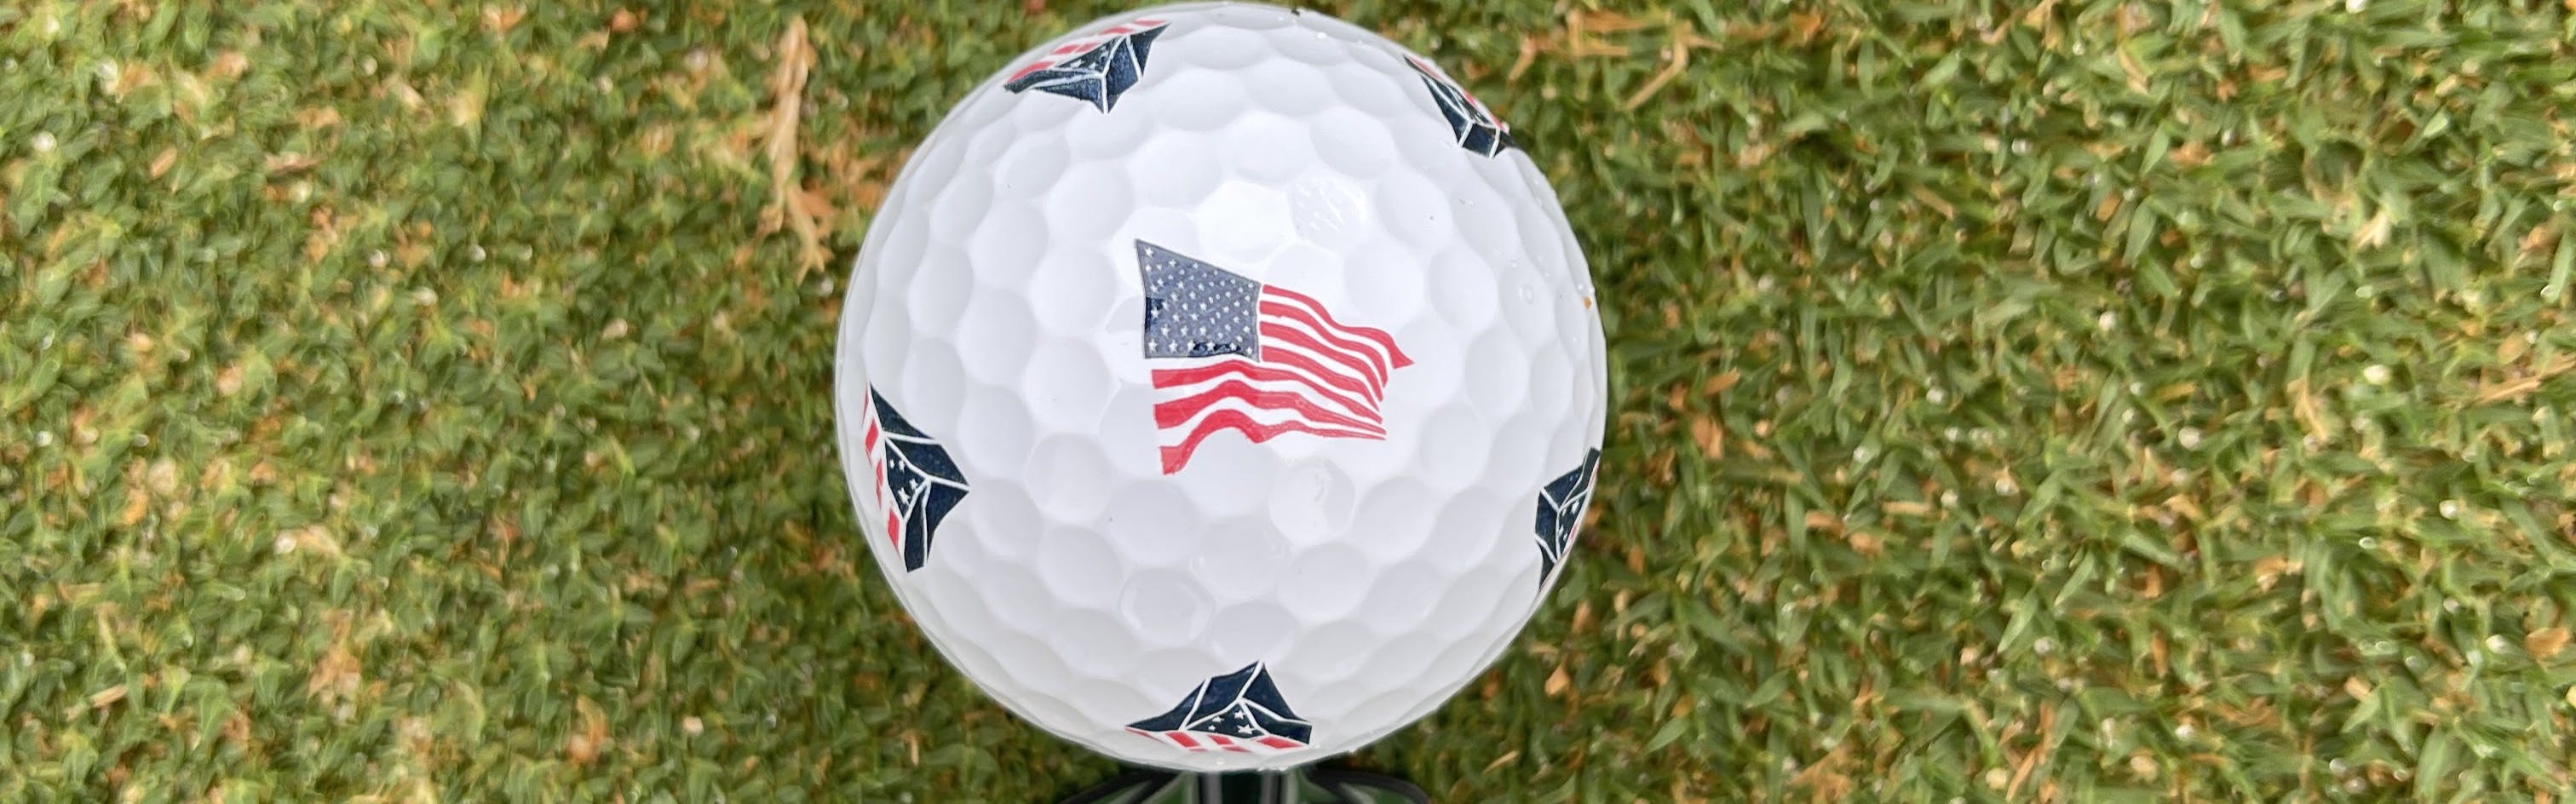 The TaylorMade TP5x Pix USA Golf Ball.